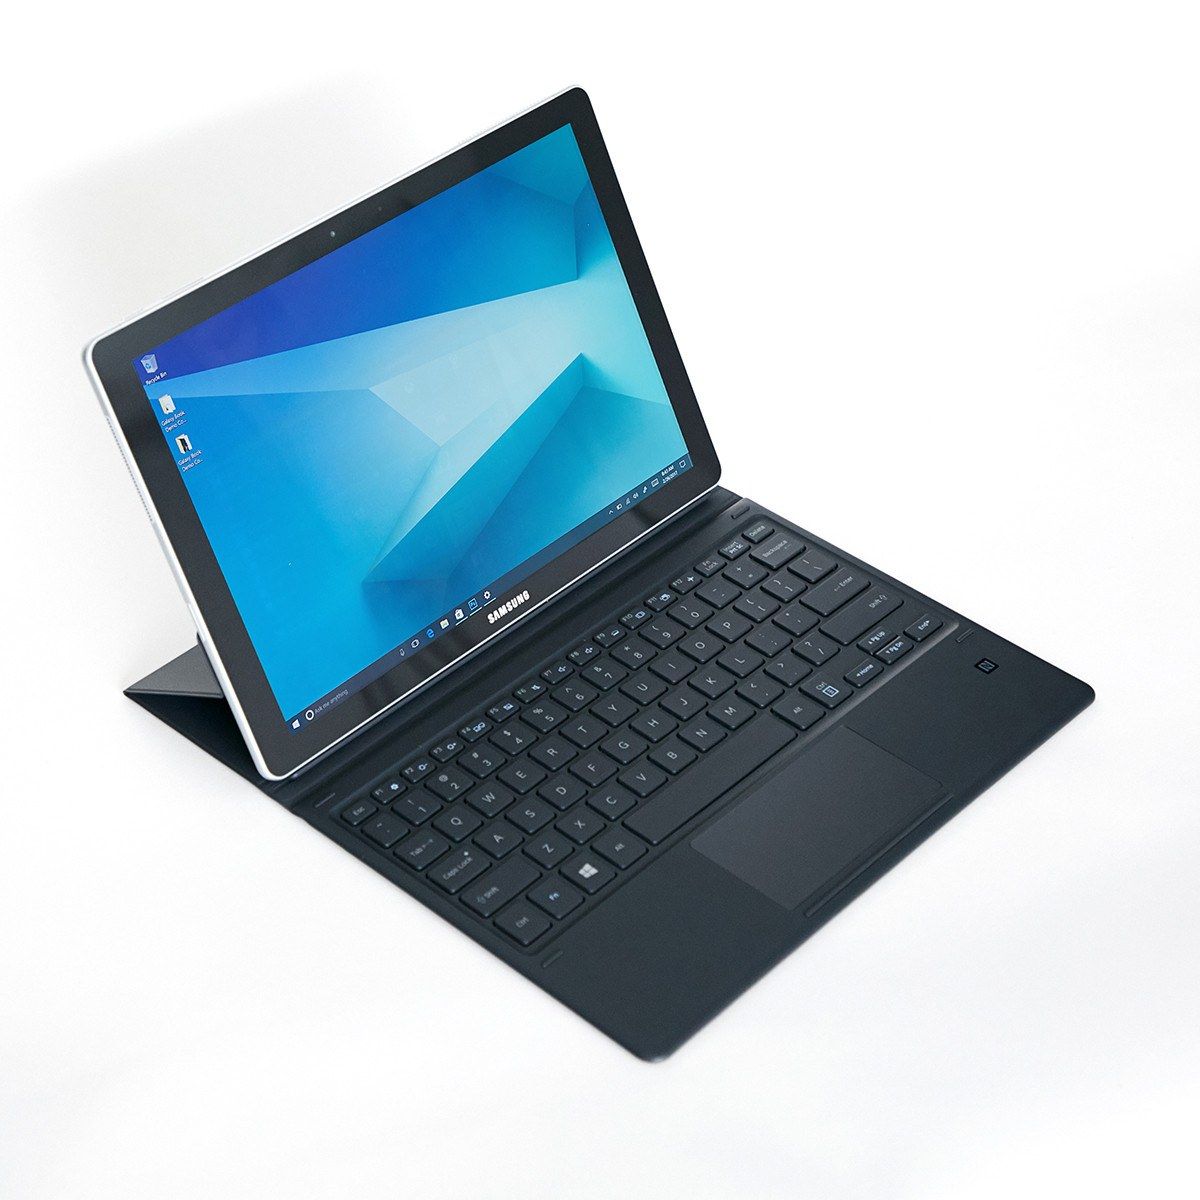 Samsung Galaxy Book una Tablet convertible de altas prestaciones